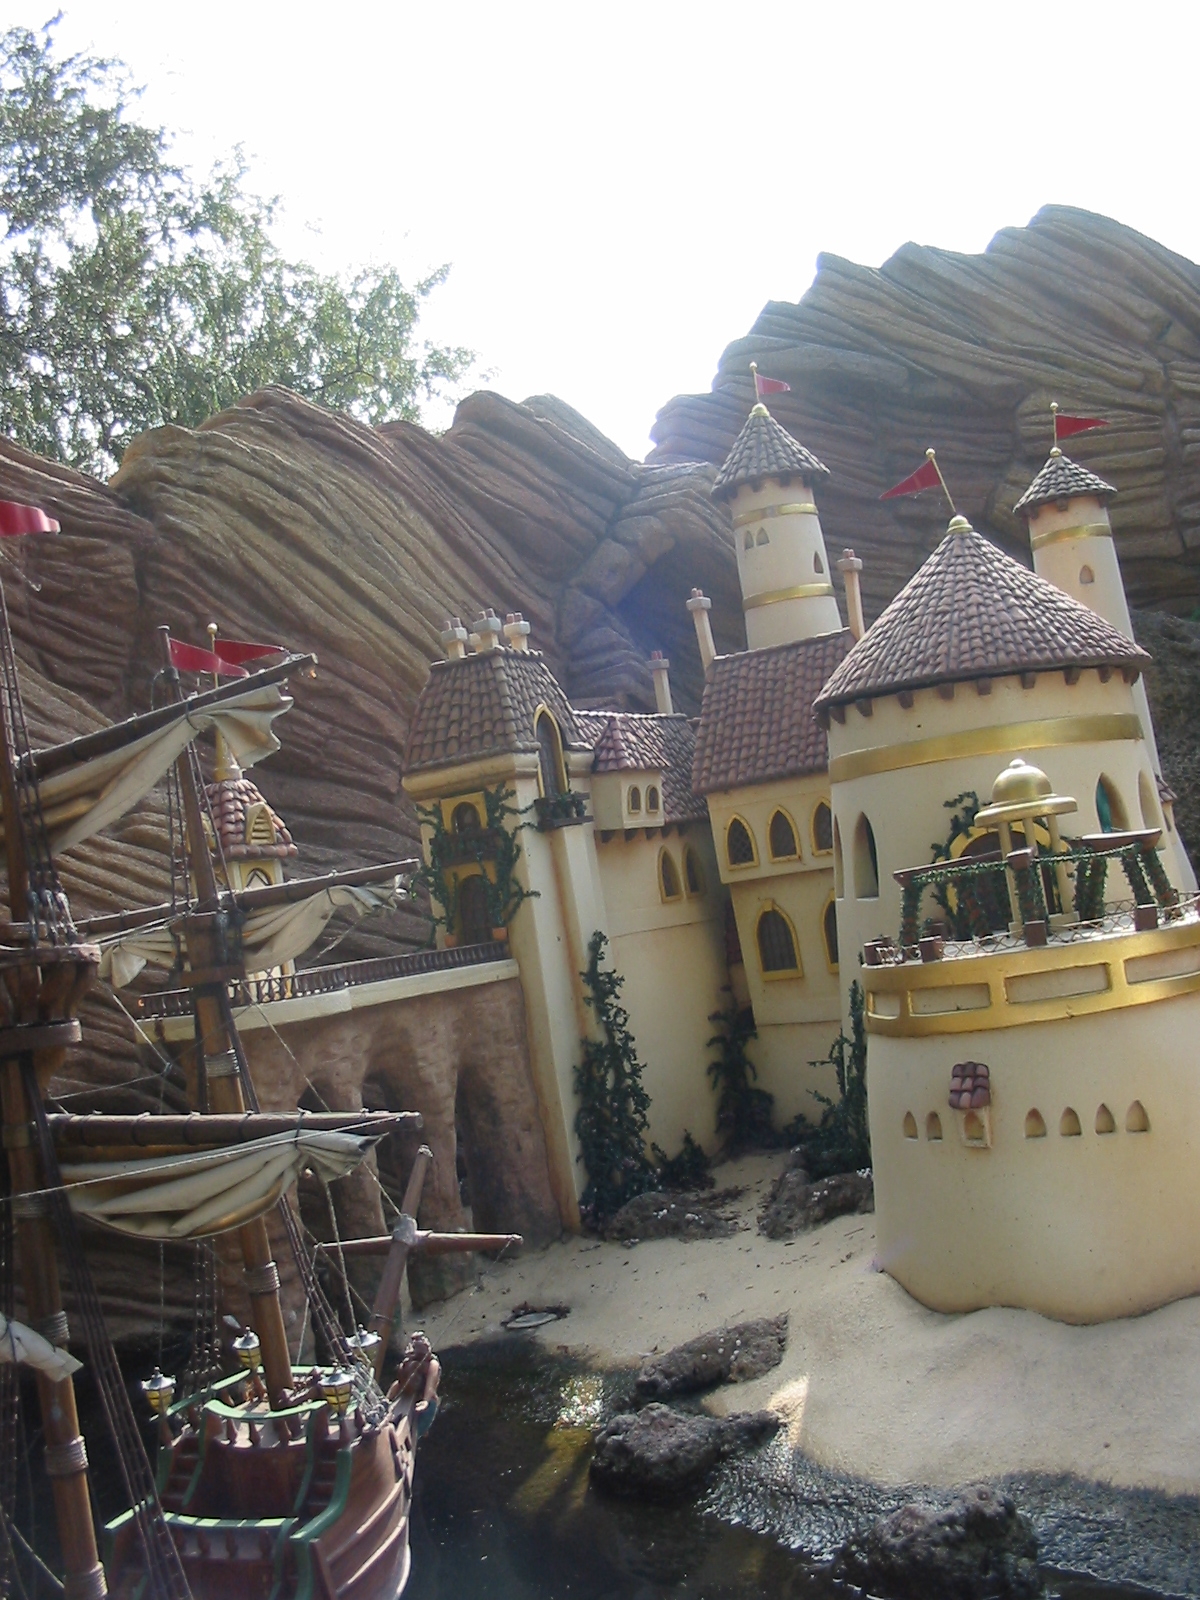 Storybook Land at Disneyland 2005